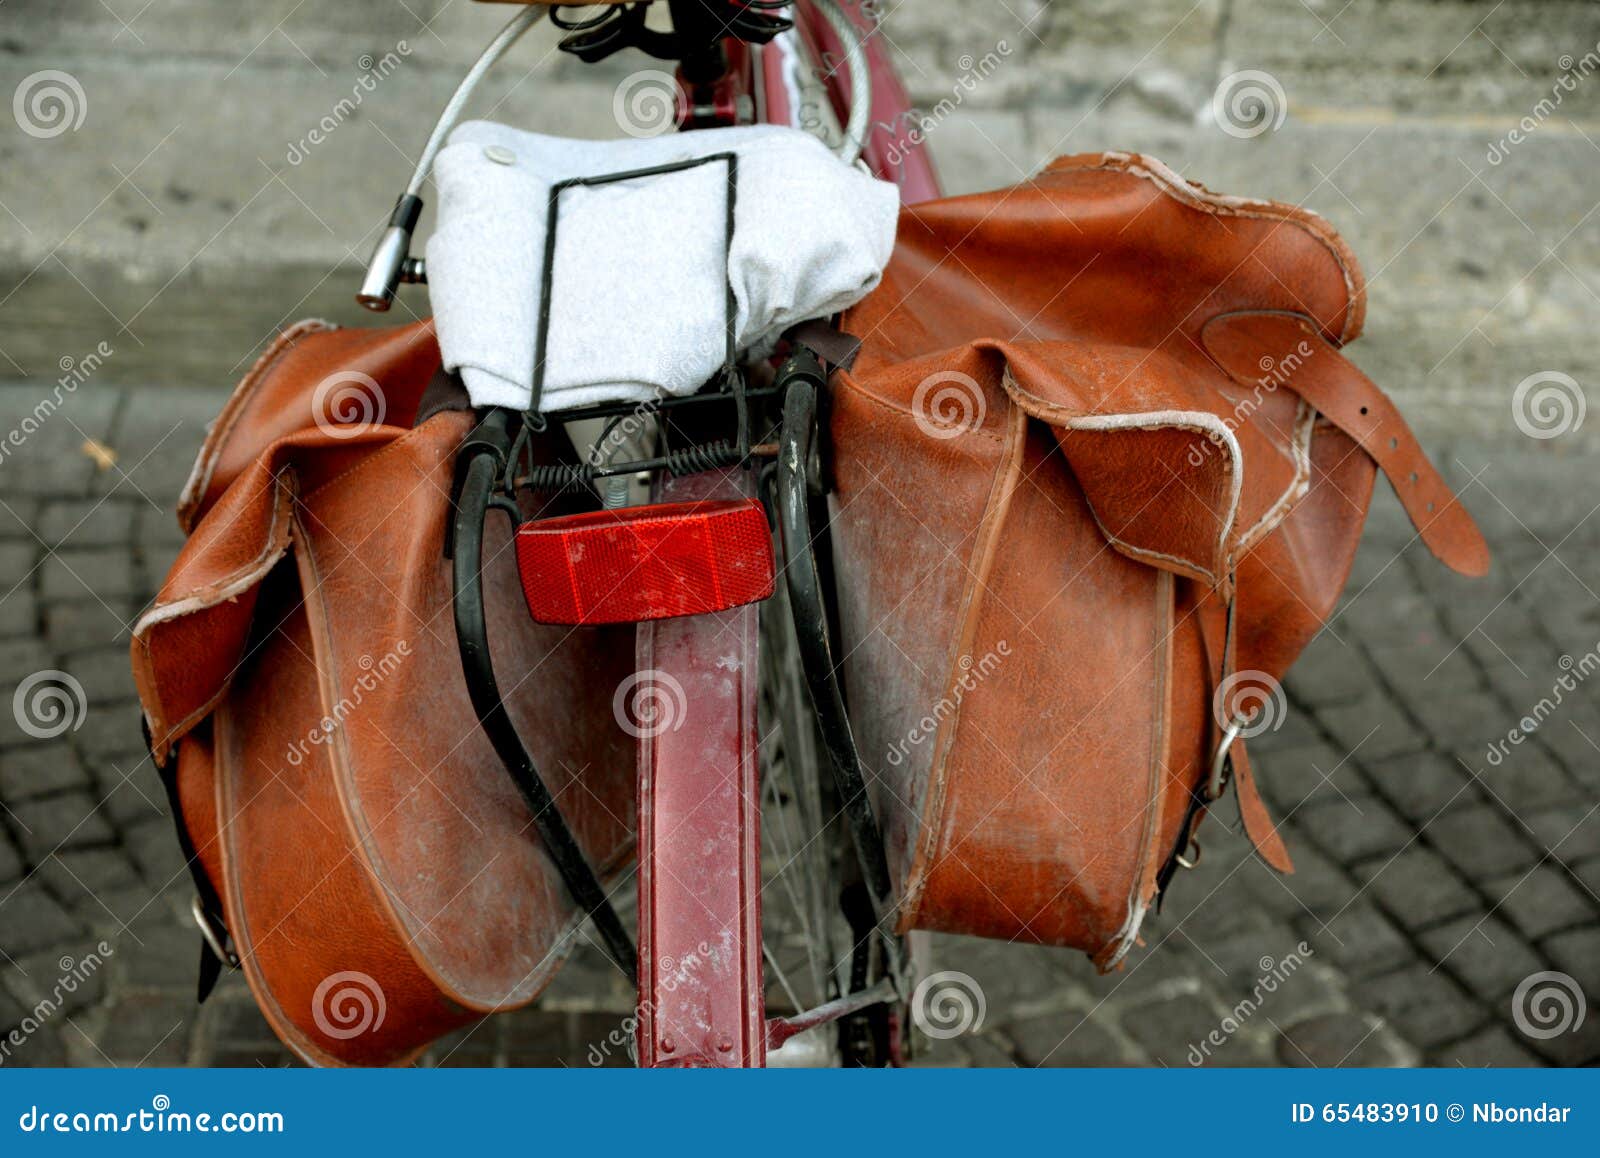 Το ποδήλατο πιό pannier (τσάντα) και μέρος του παλαιού ποδηλάτου